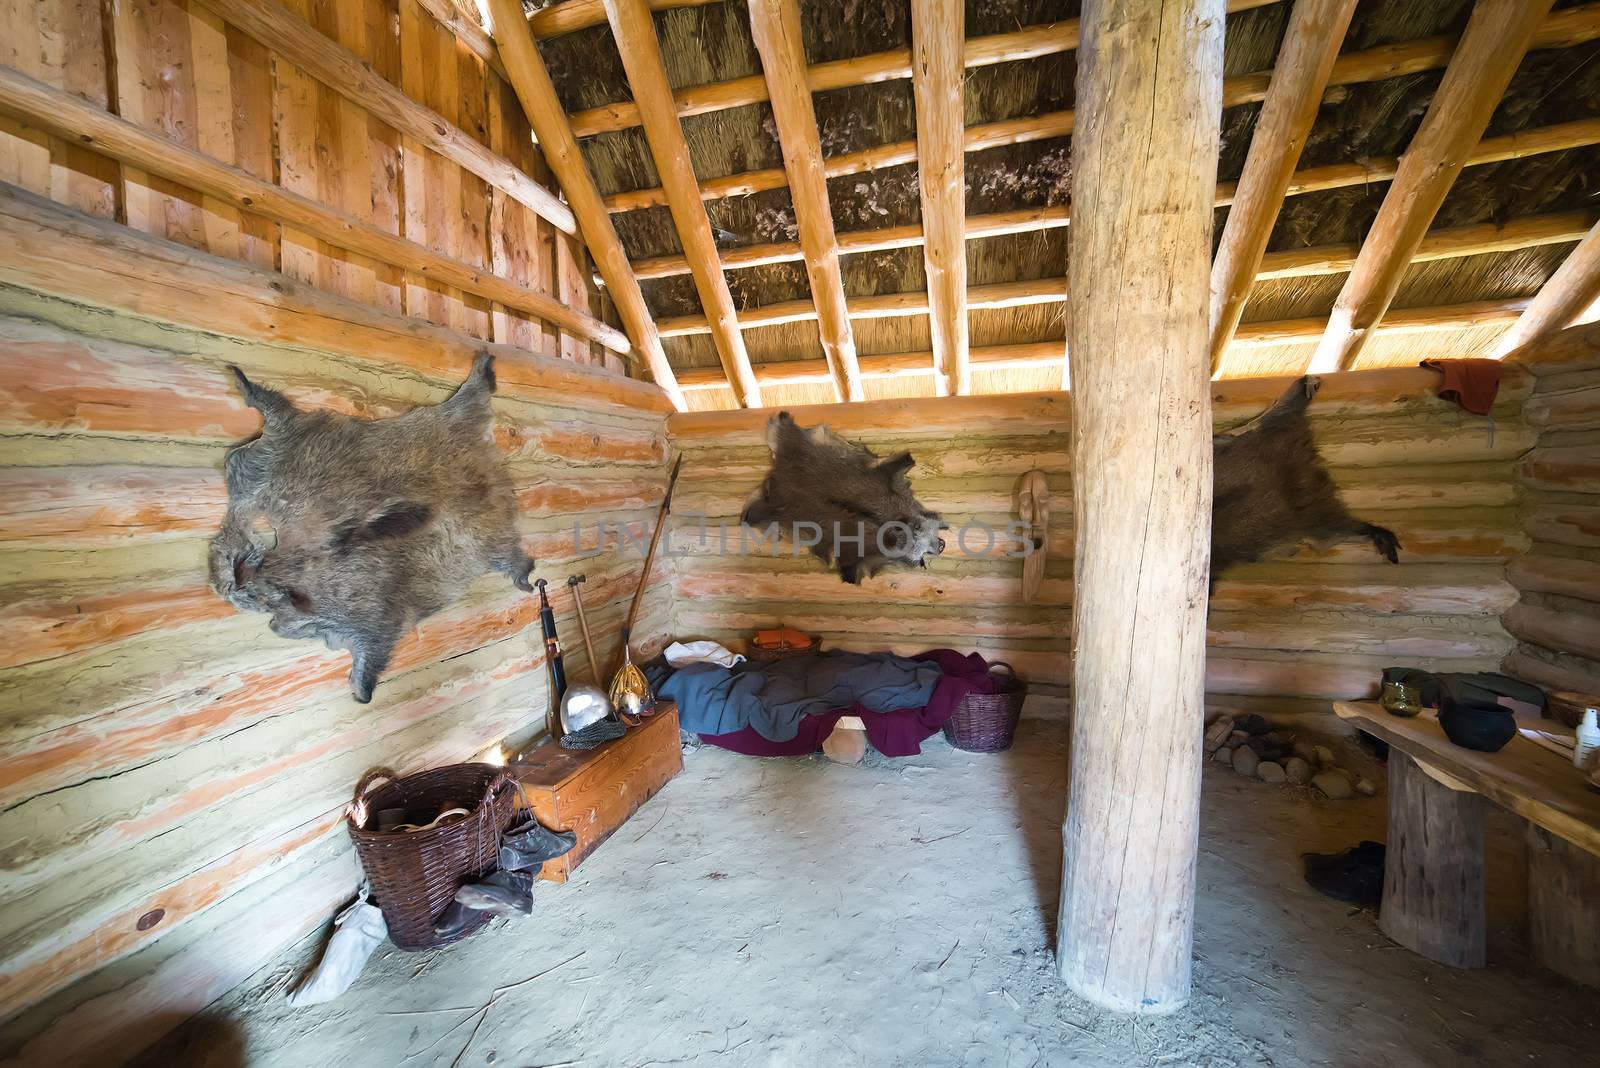 Inside of hunter's hut by furzyk73